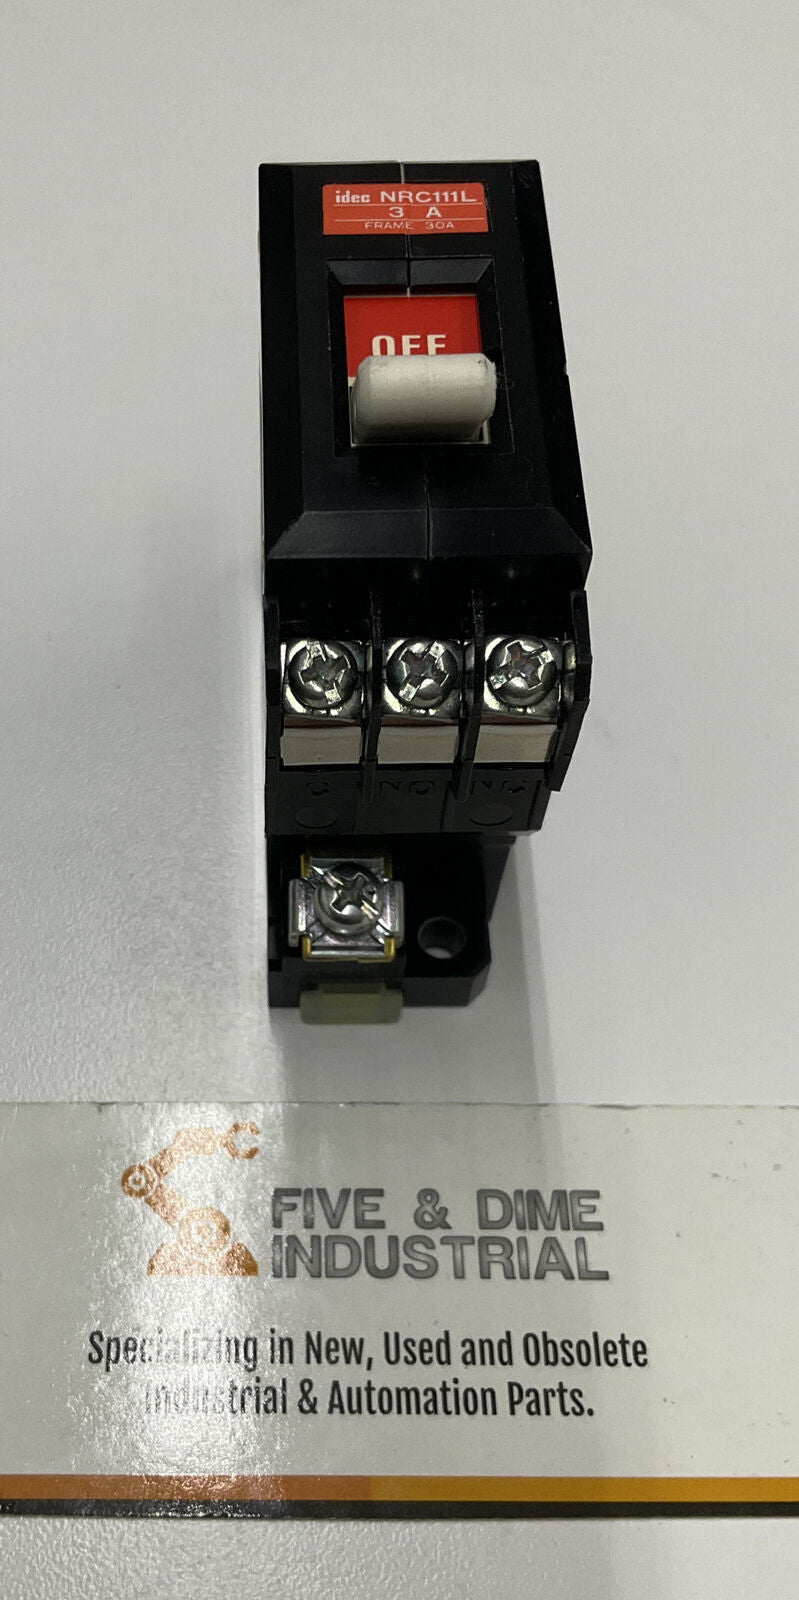 IDEC NRC111L New Circuit Breaker (BL256) - 0